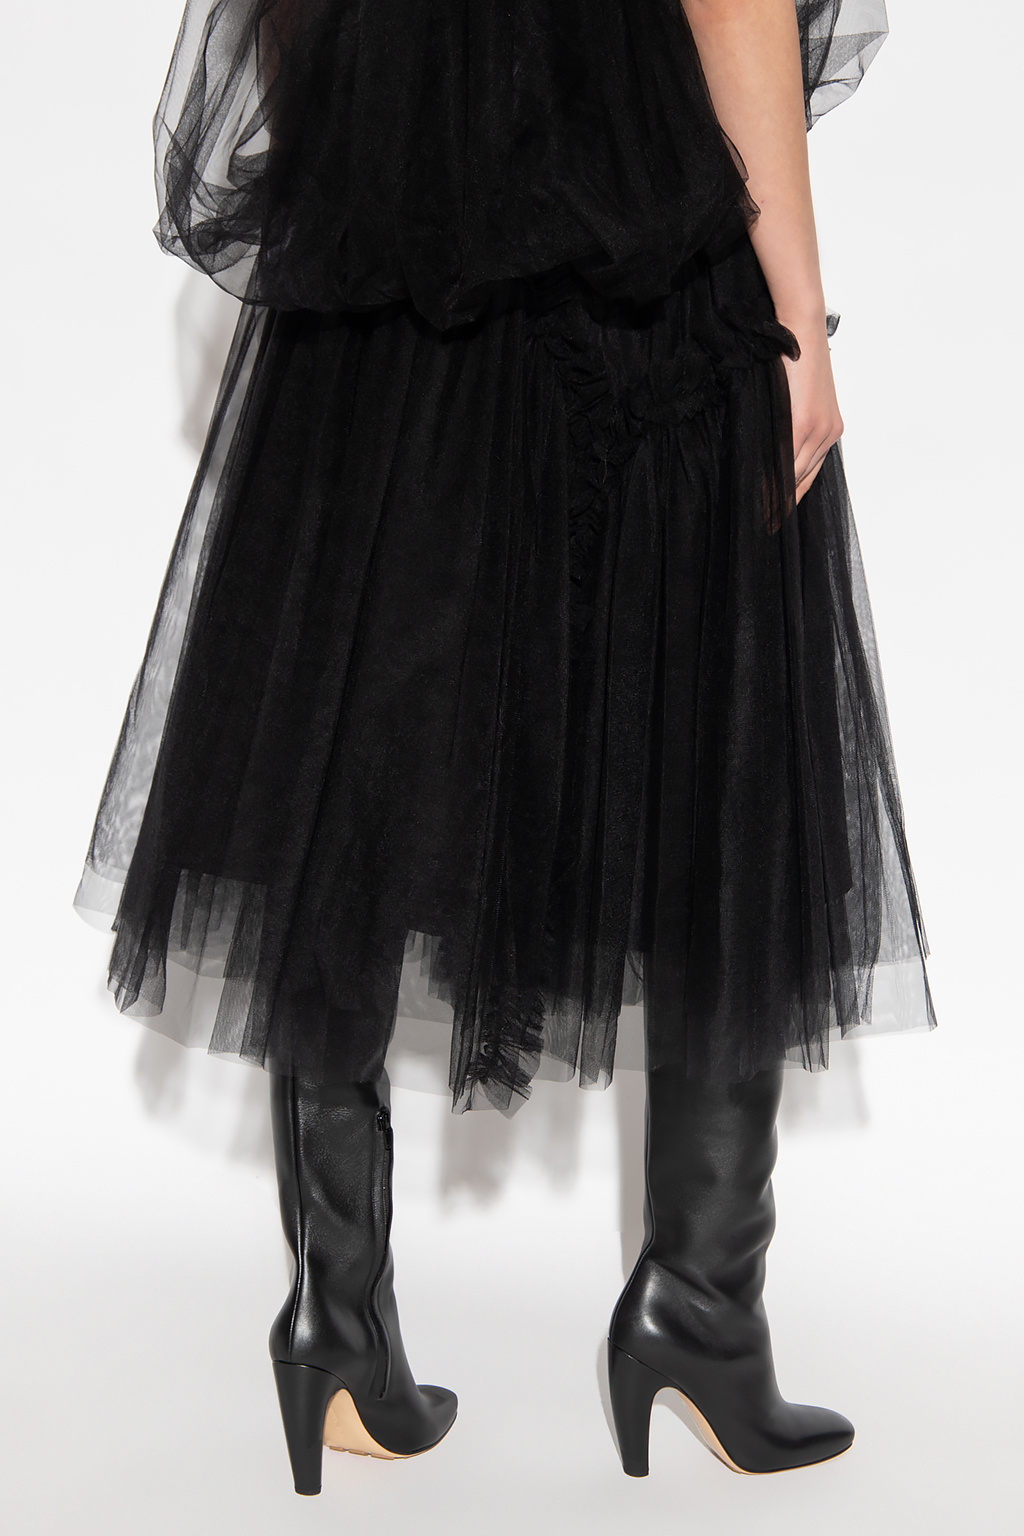 Black Tulle skirt Comme des Garçons Noir Kei Ninomiya